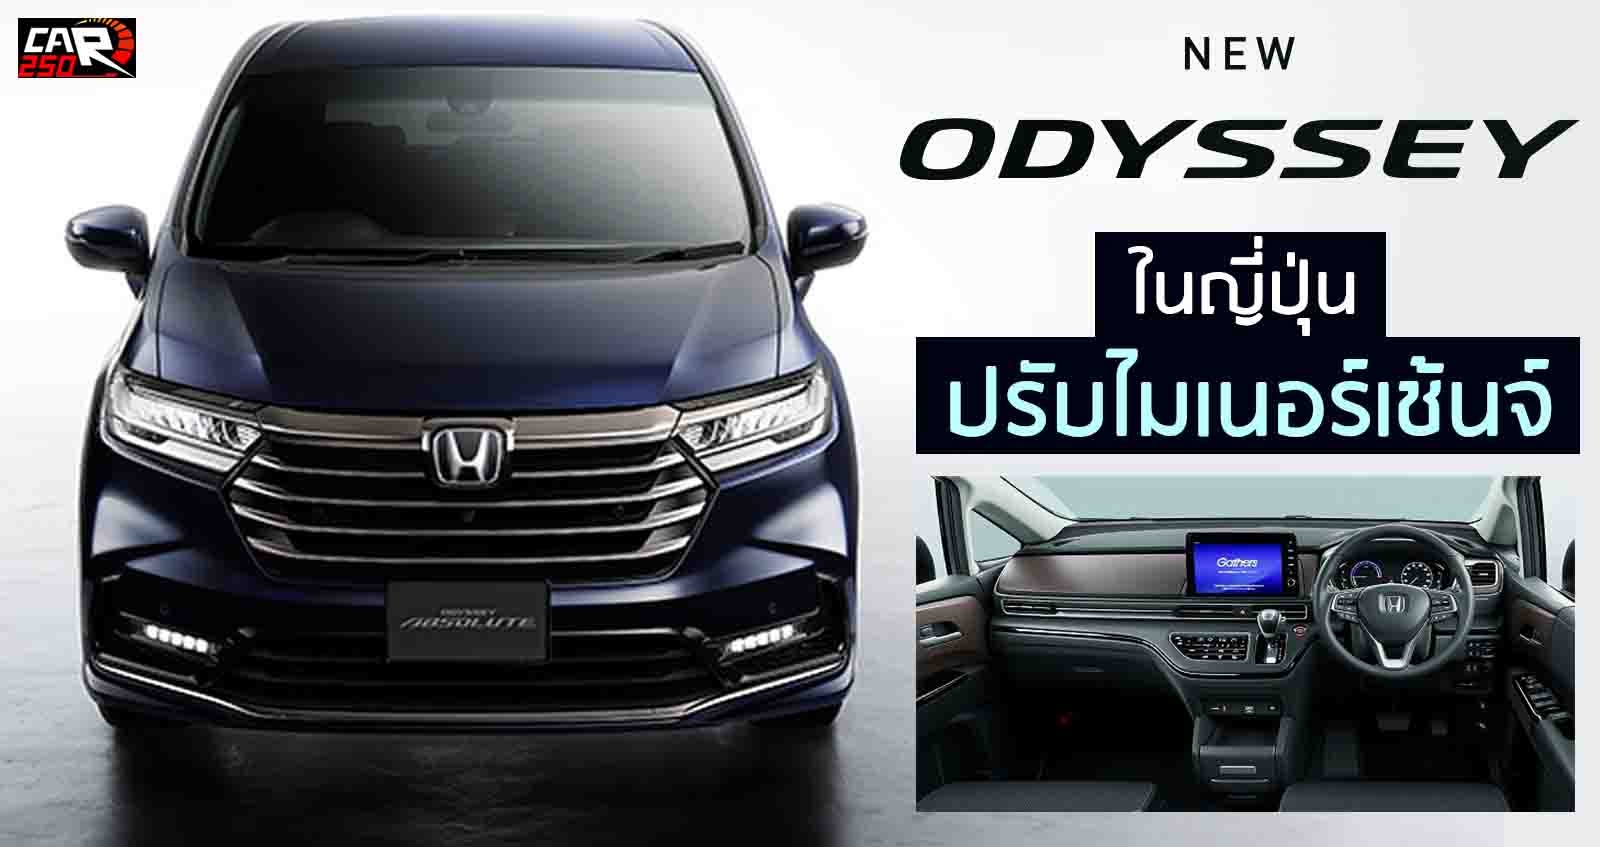 เผยภาพ Honda ODYSSEY ไมเนอร์เช้นจ์ ก่อนเปิดตัว ในญี่ปุ่น